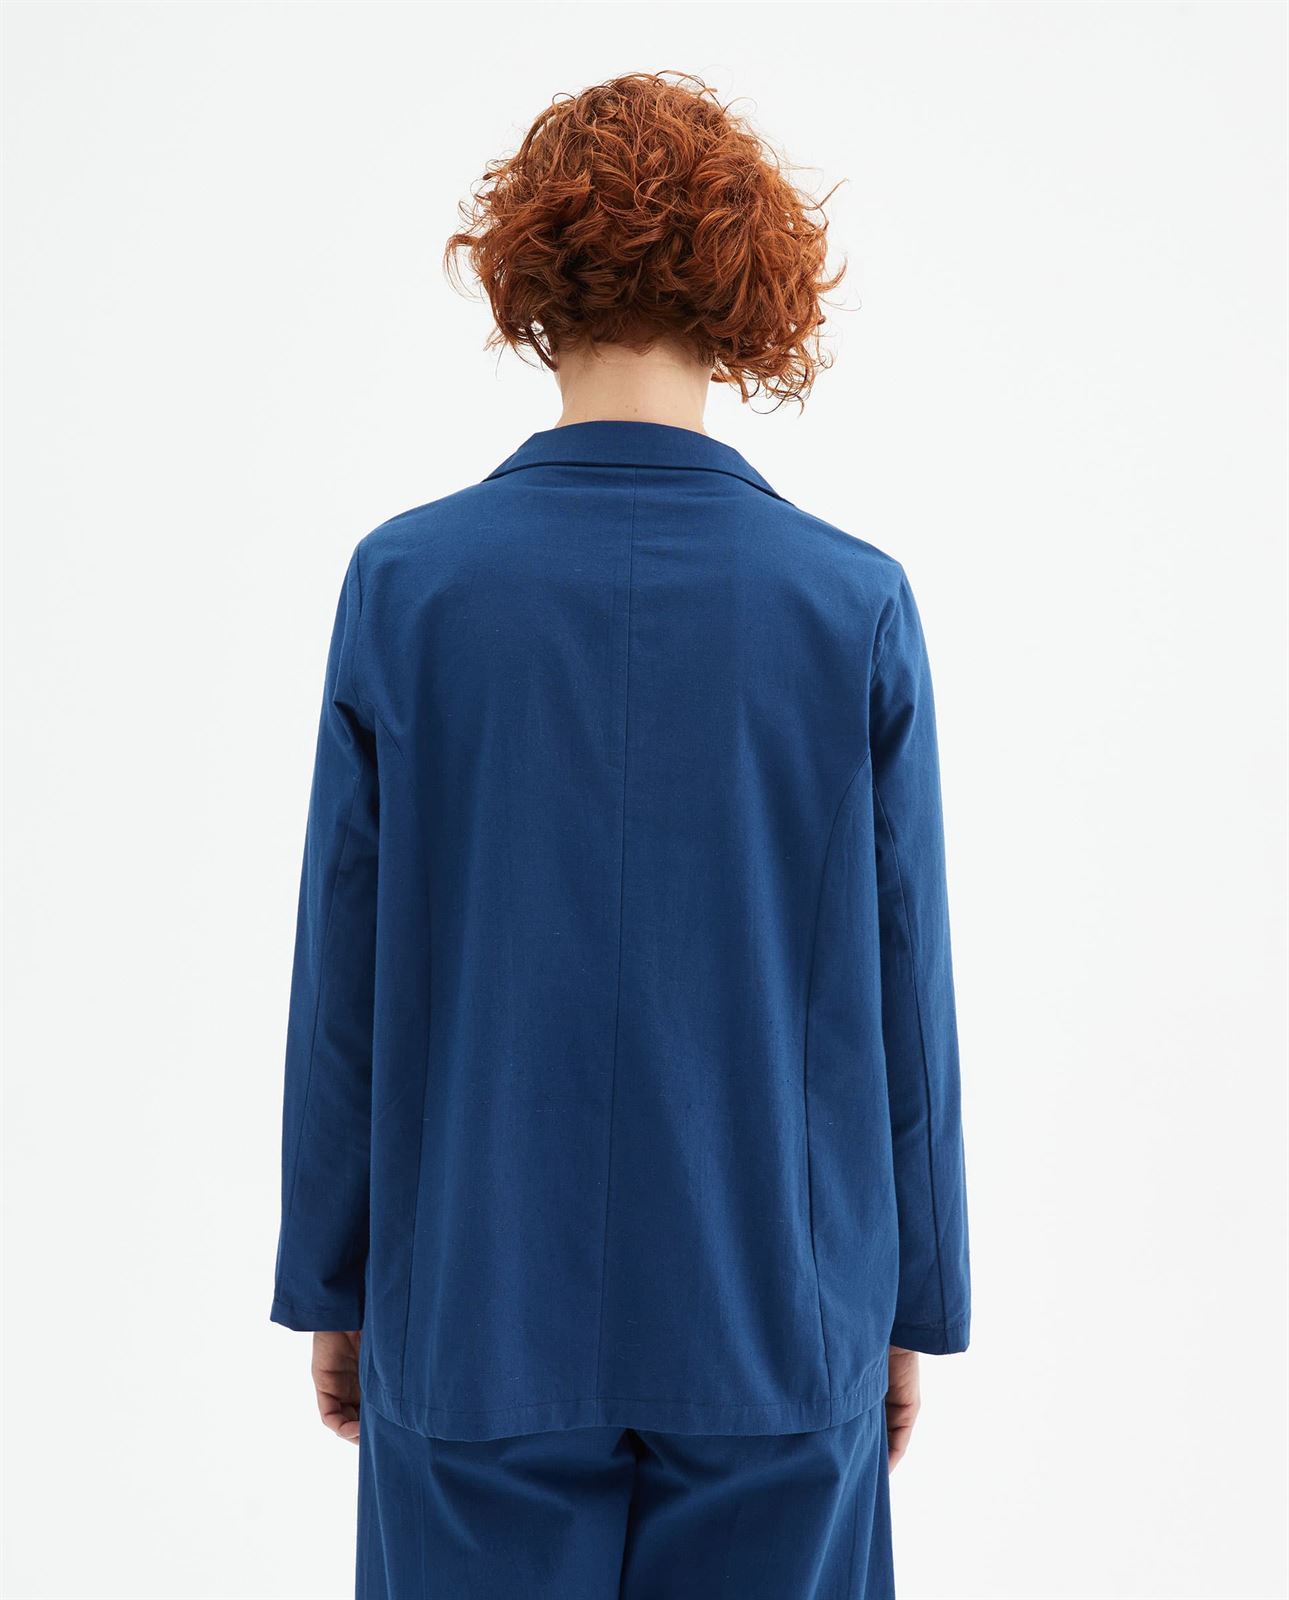 Compañía Fantástica_ Blazer de algodón con cuello solapa azul - Imagen 2